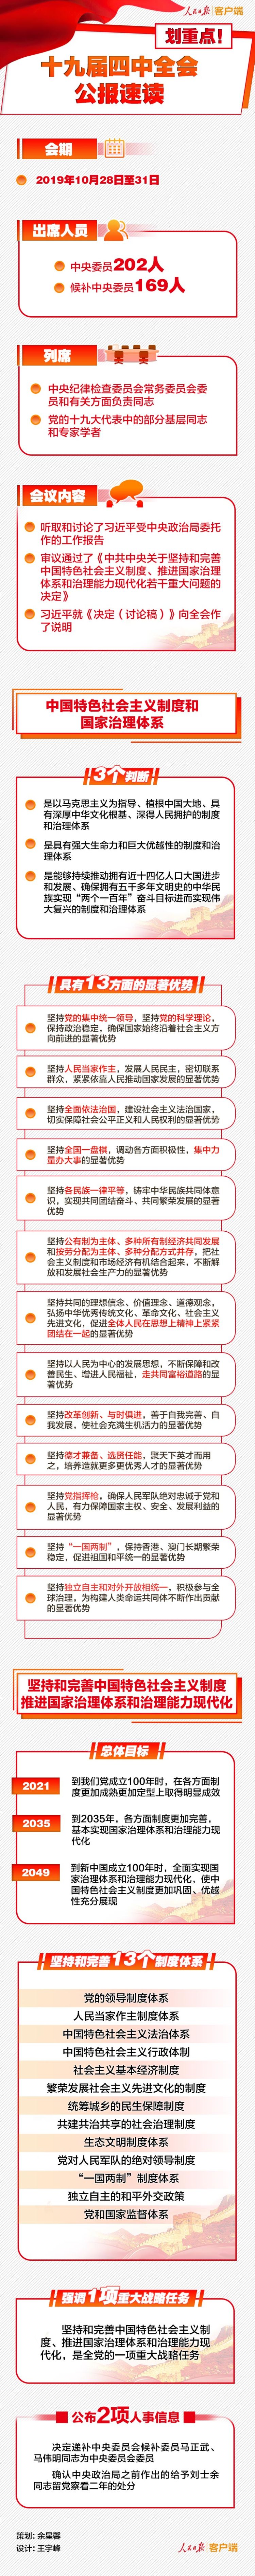 党的十九届四中全会审议通过了中共中央关于坚持和完善中国特色